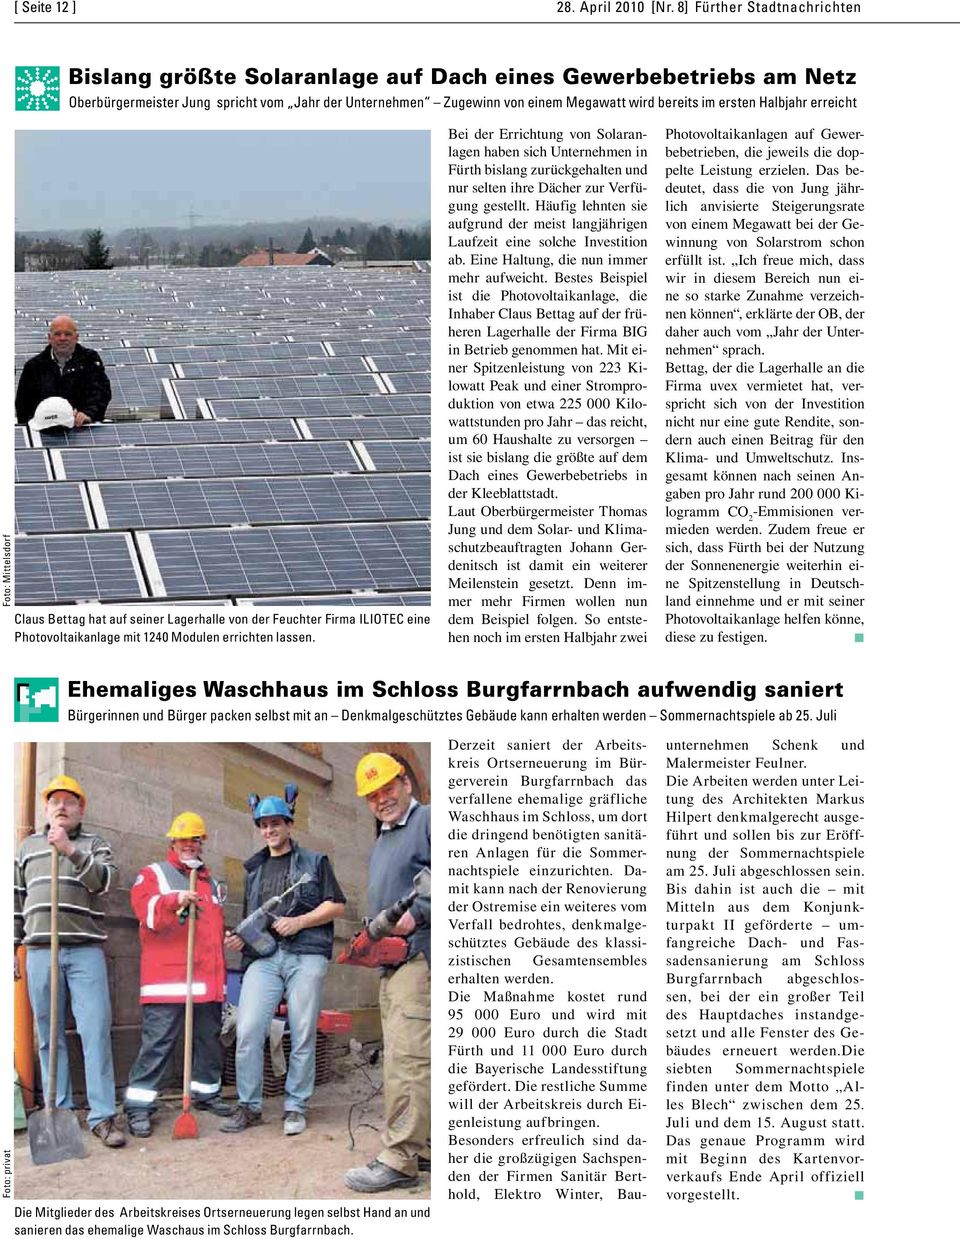 ersten Halbjahr erreicht Foto: Mittelsdorf Claus Bettag hat auf seiner Lagerhalle von der Feuchter Firma ILIOTEC eine Photovoltaikanlage mit 1240 Modulen errichten lassen.